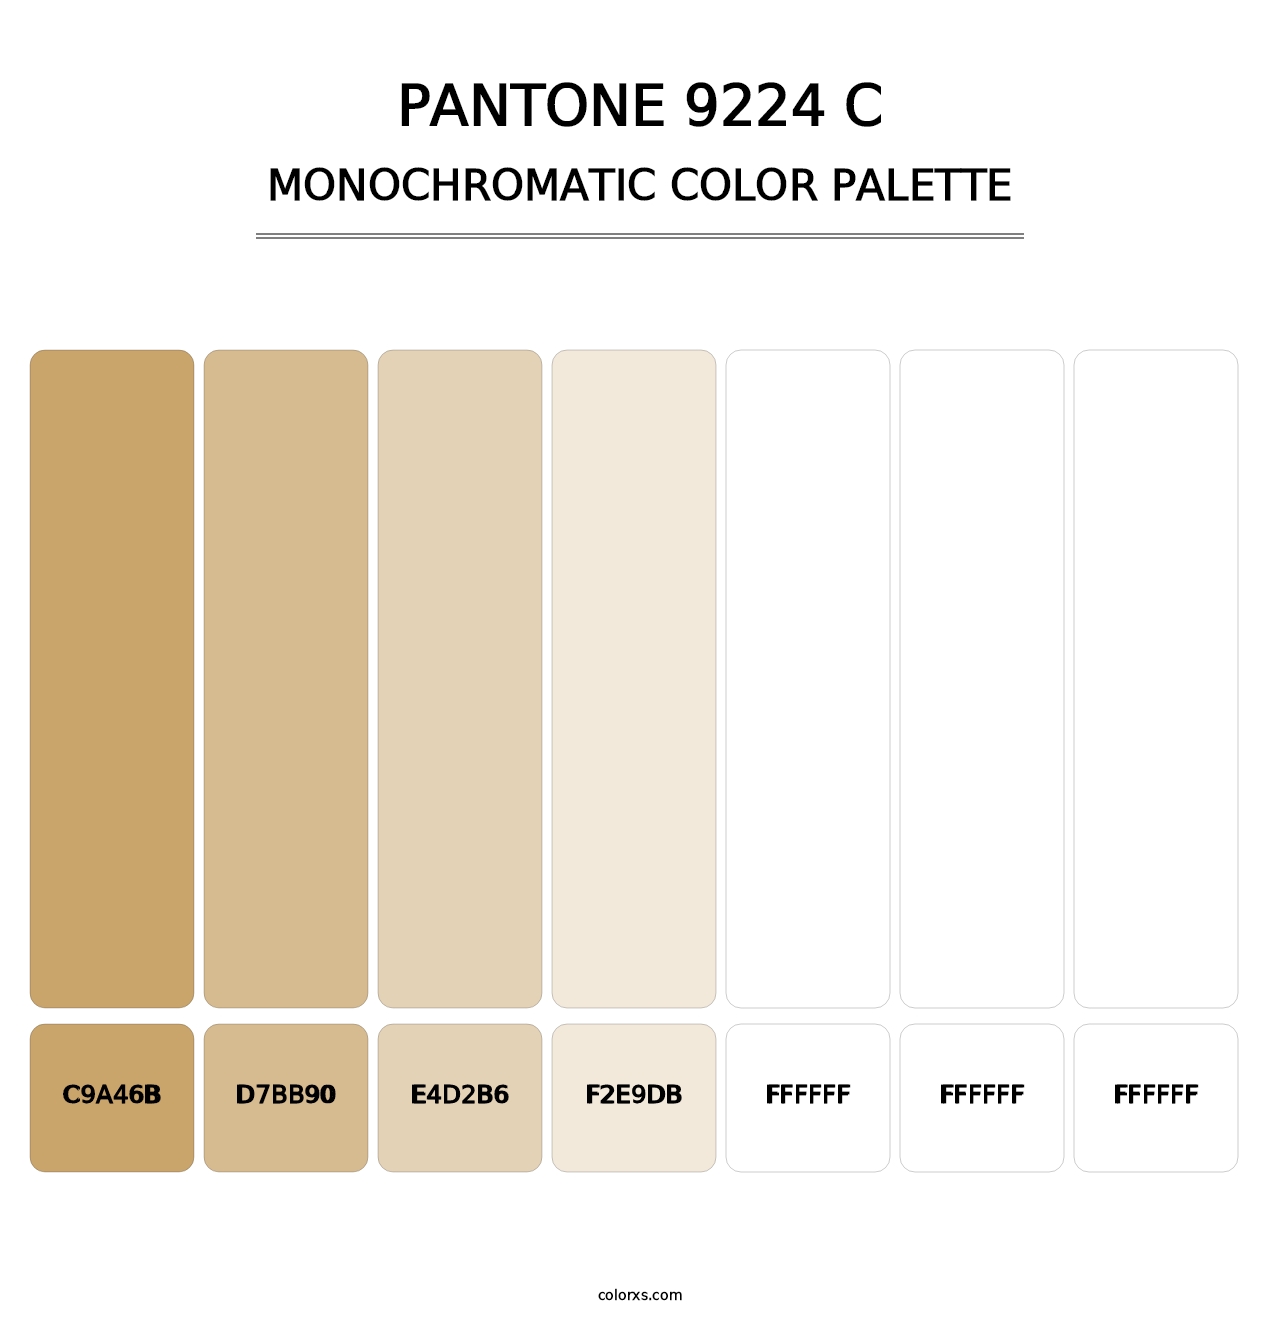 PANTONE 9224 C - Monochromatic Color Palette